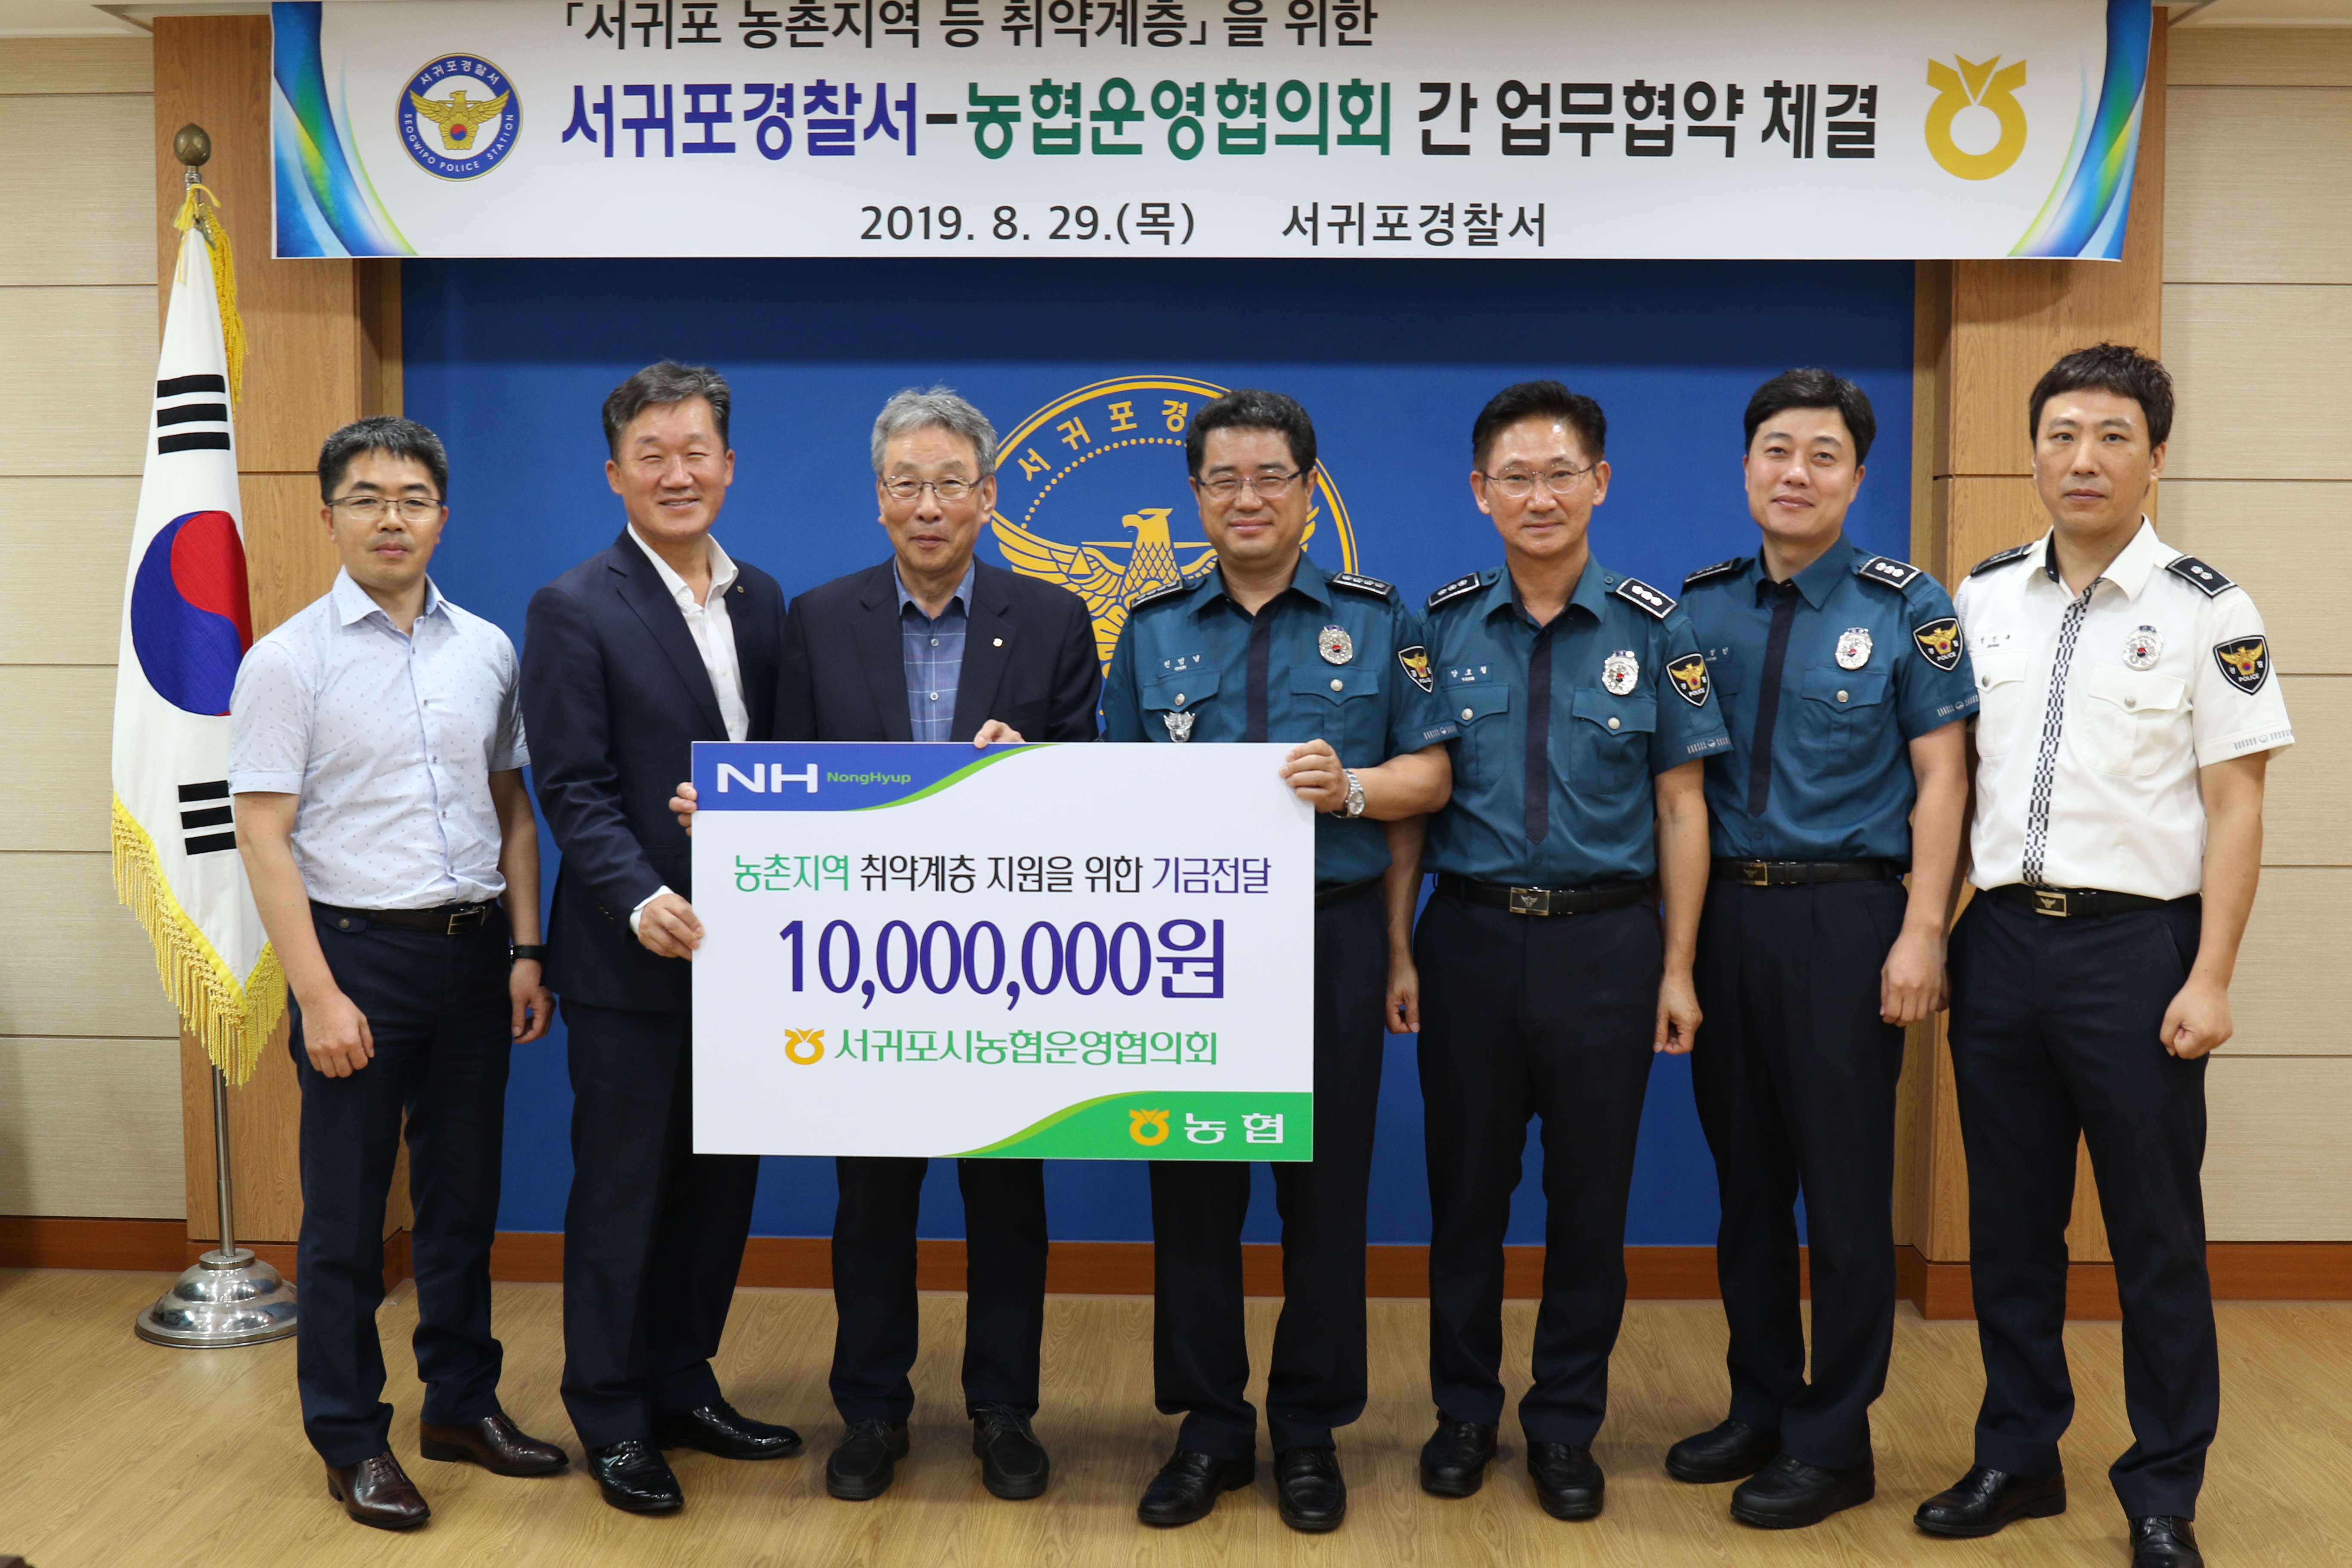 서귀포서-서귀포농협 간 사고예방을 위한 업무협약식 개최